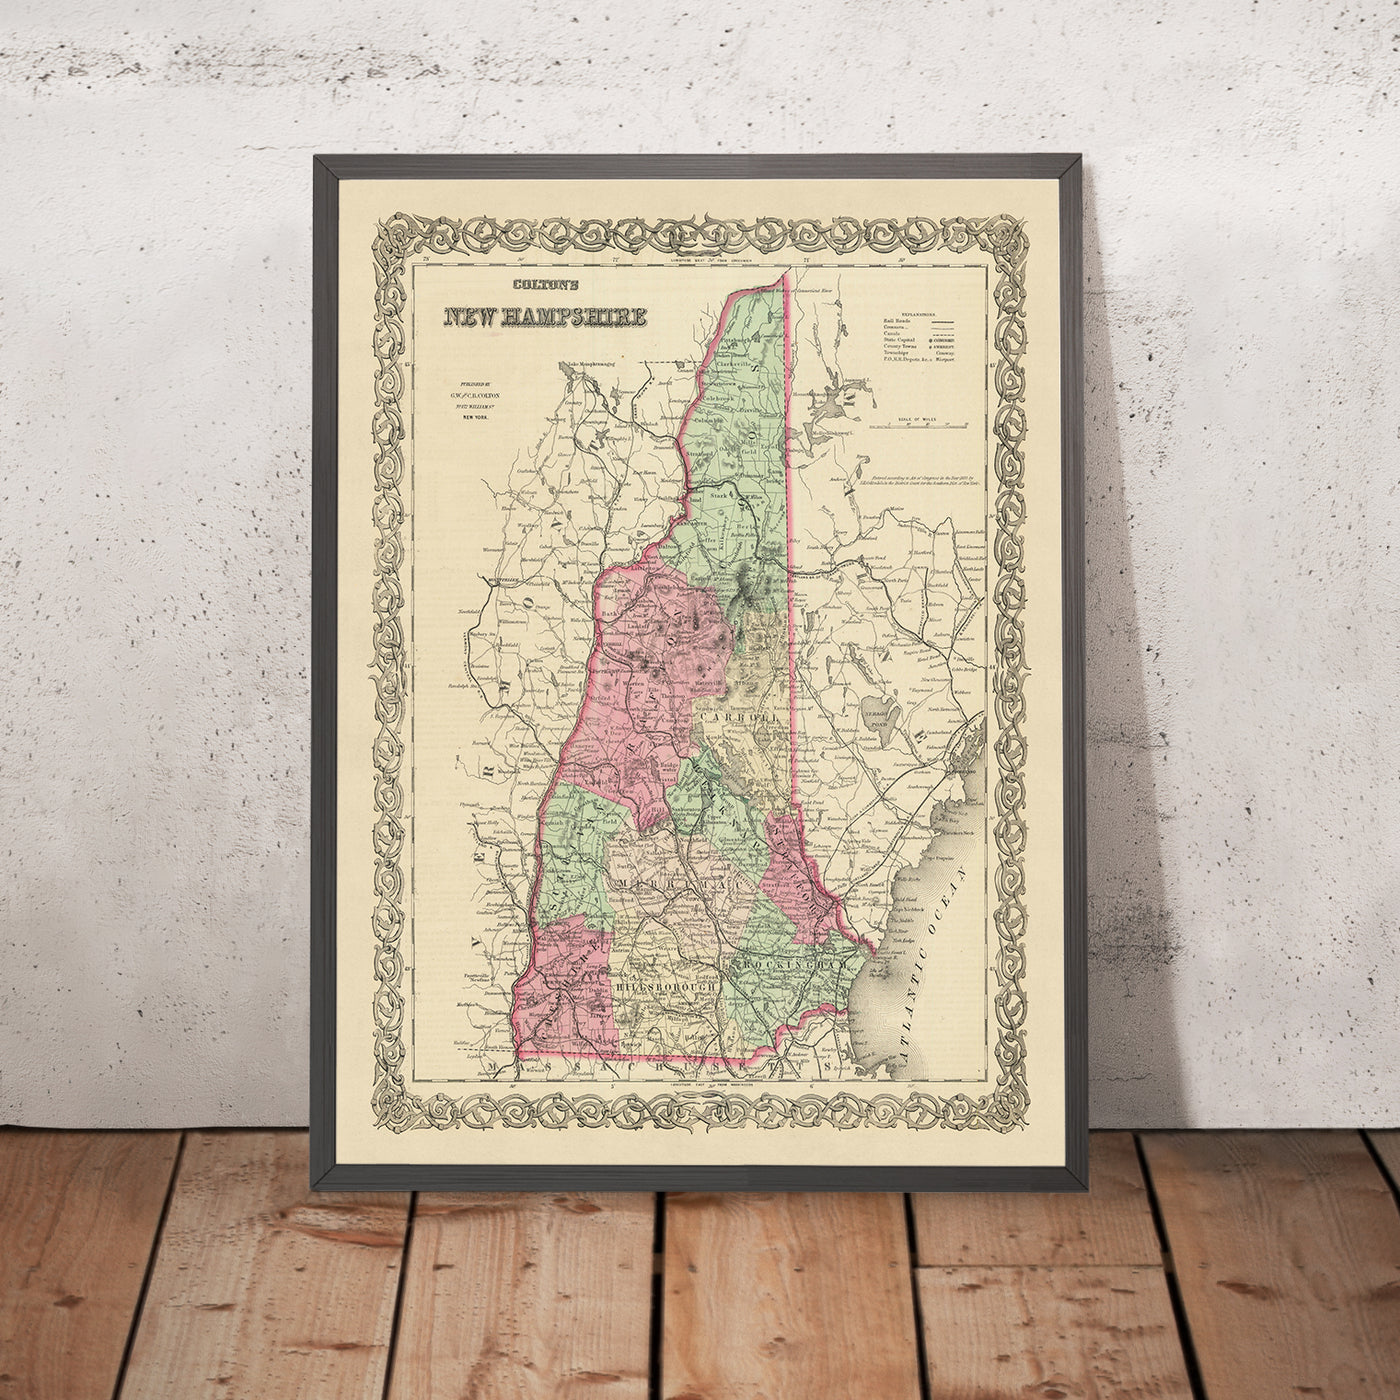 Ancienne carte du New Hampshire par JH Colton, 1855 : Concord, Portsmouth, Douvres, Nashua et Manchester